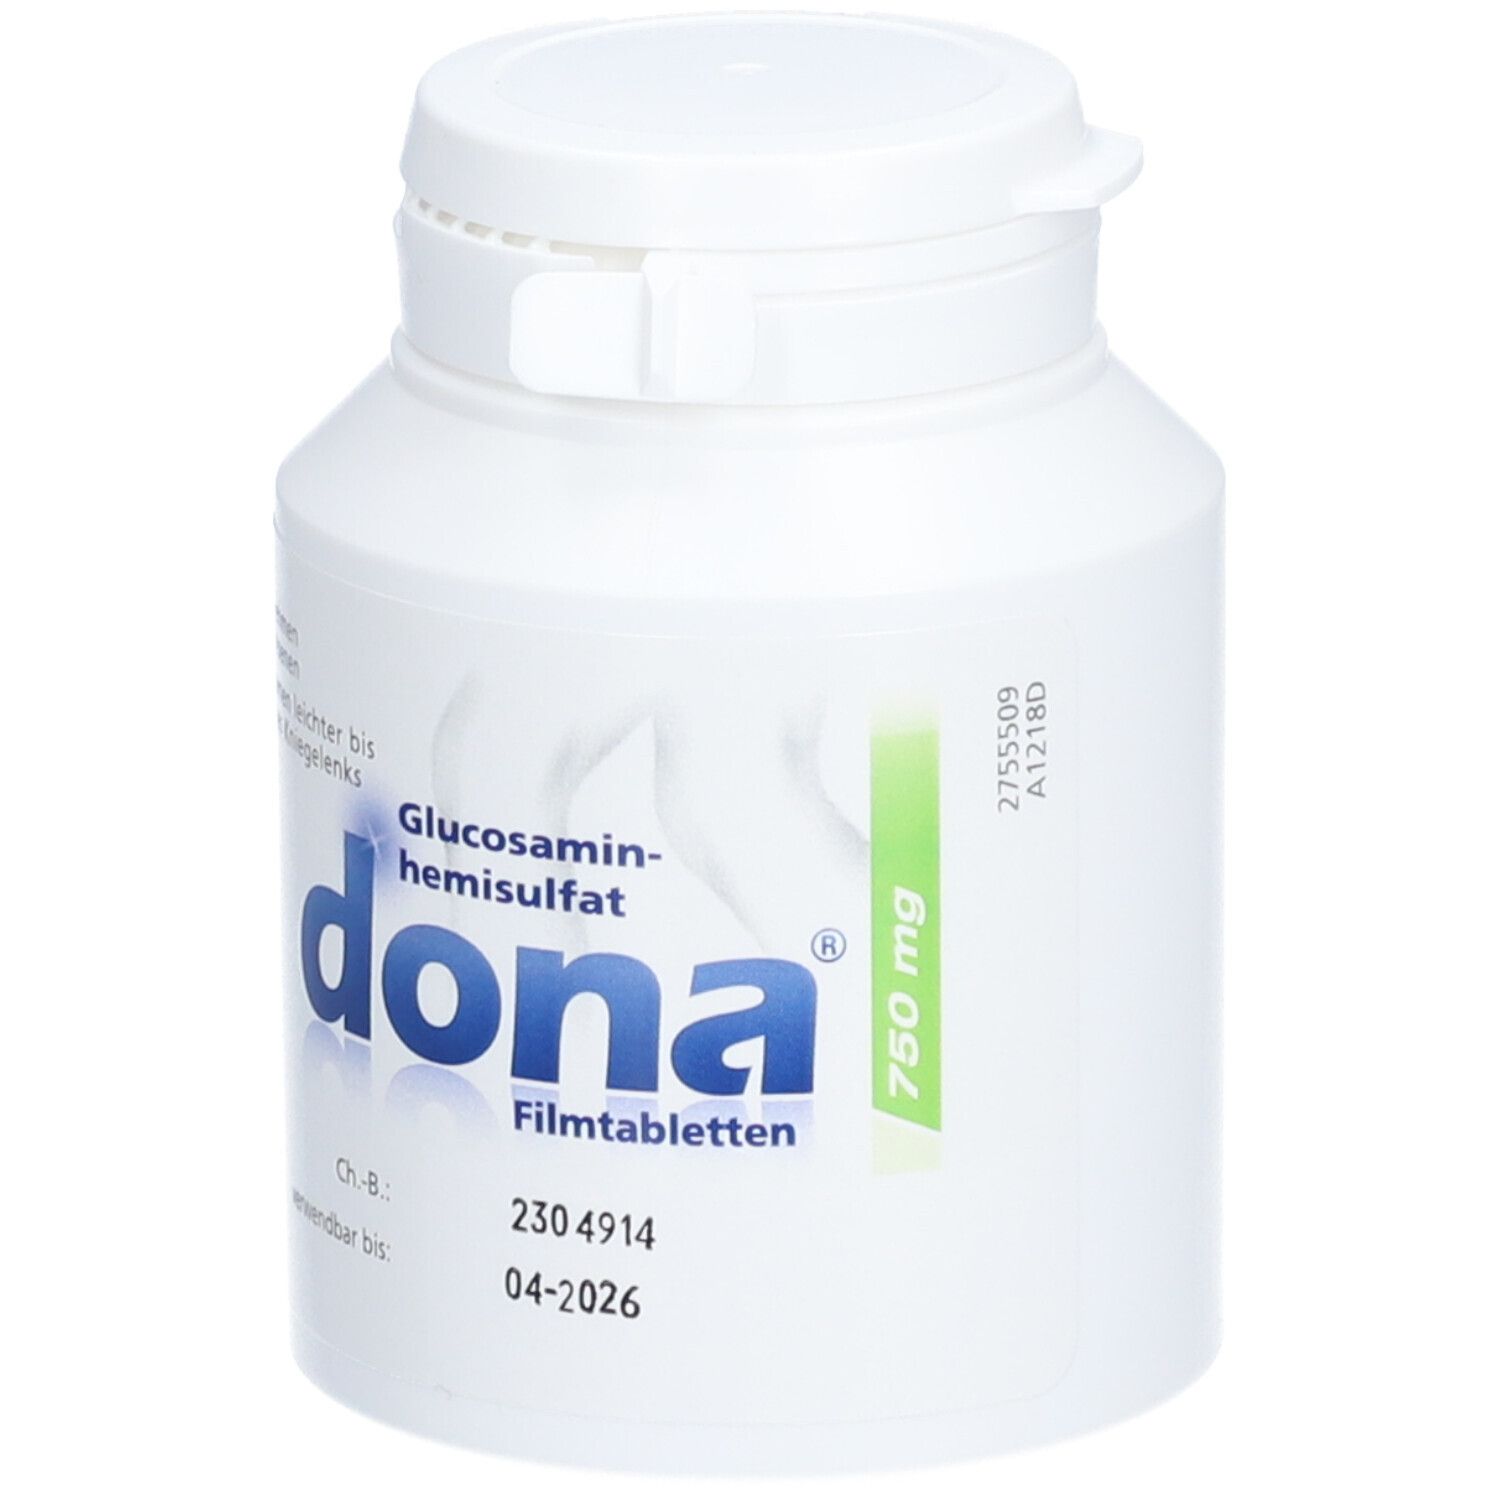 dona® 750 mg